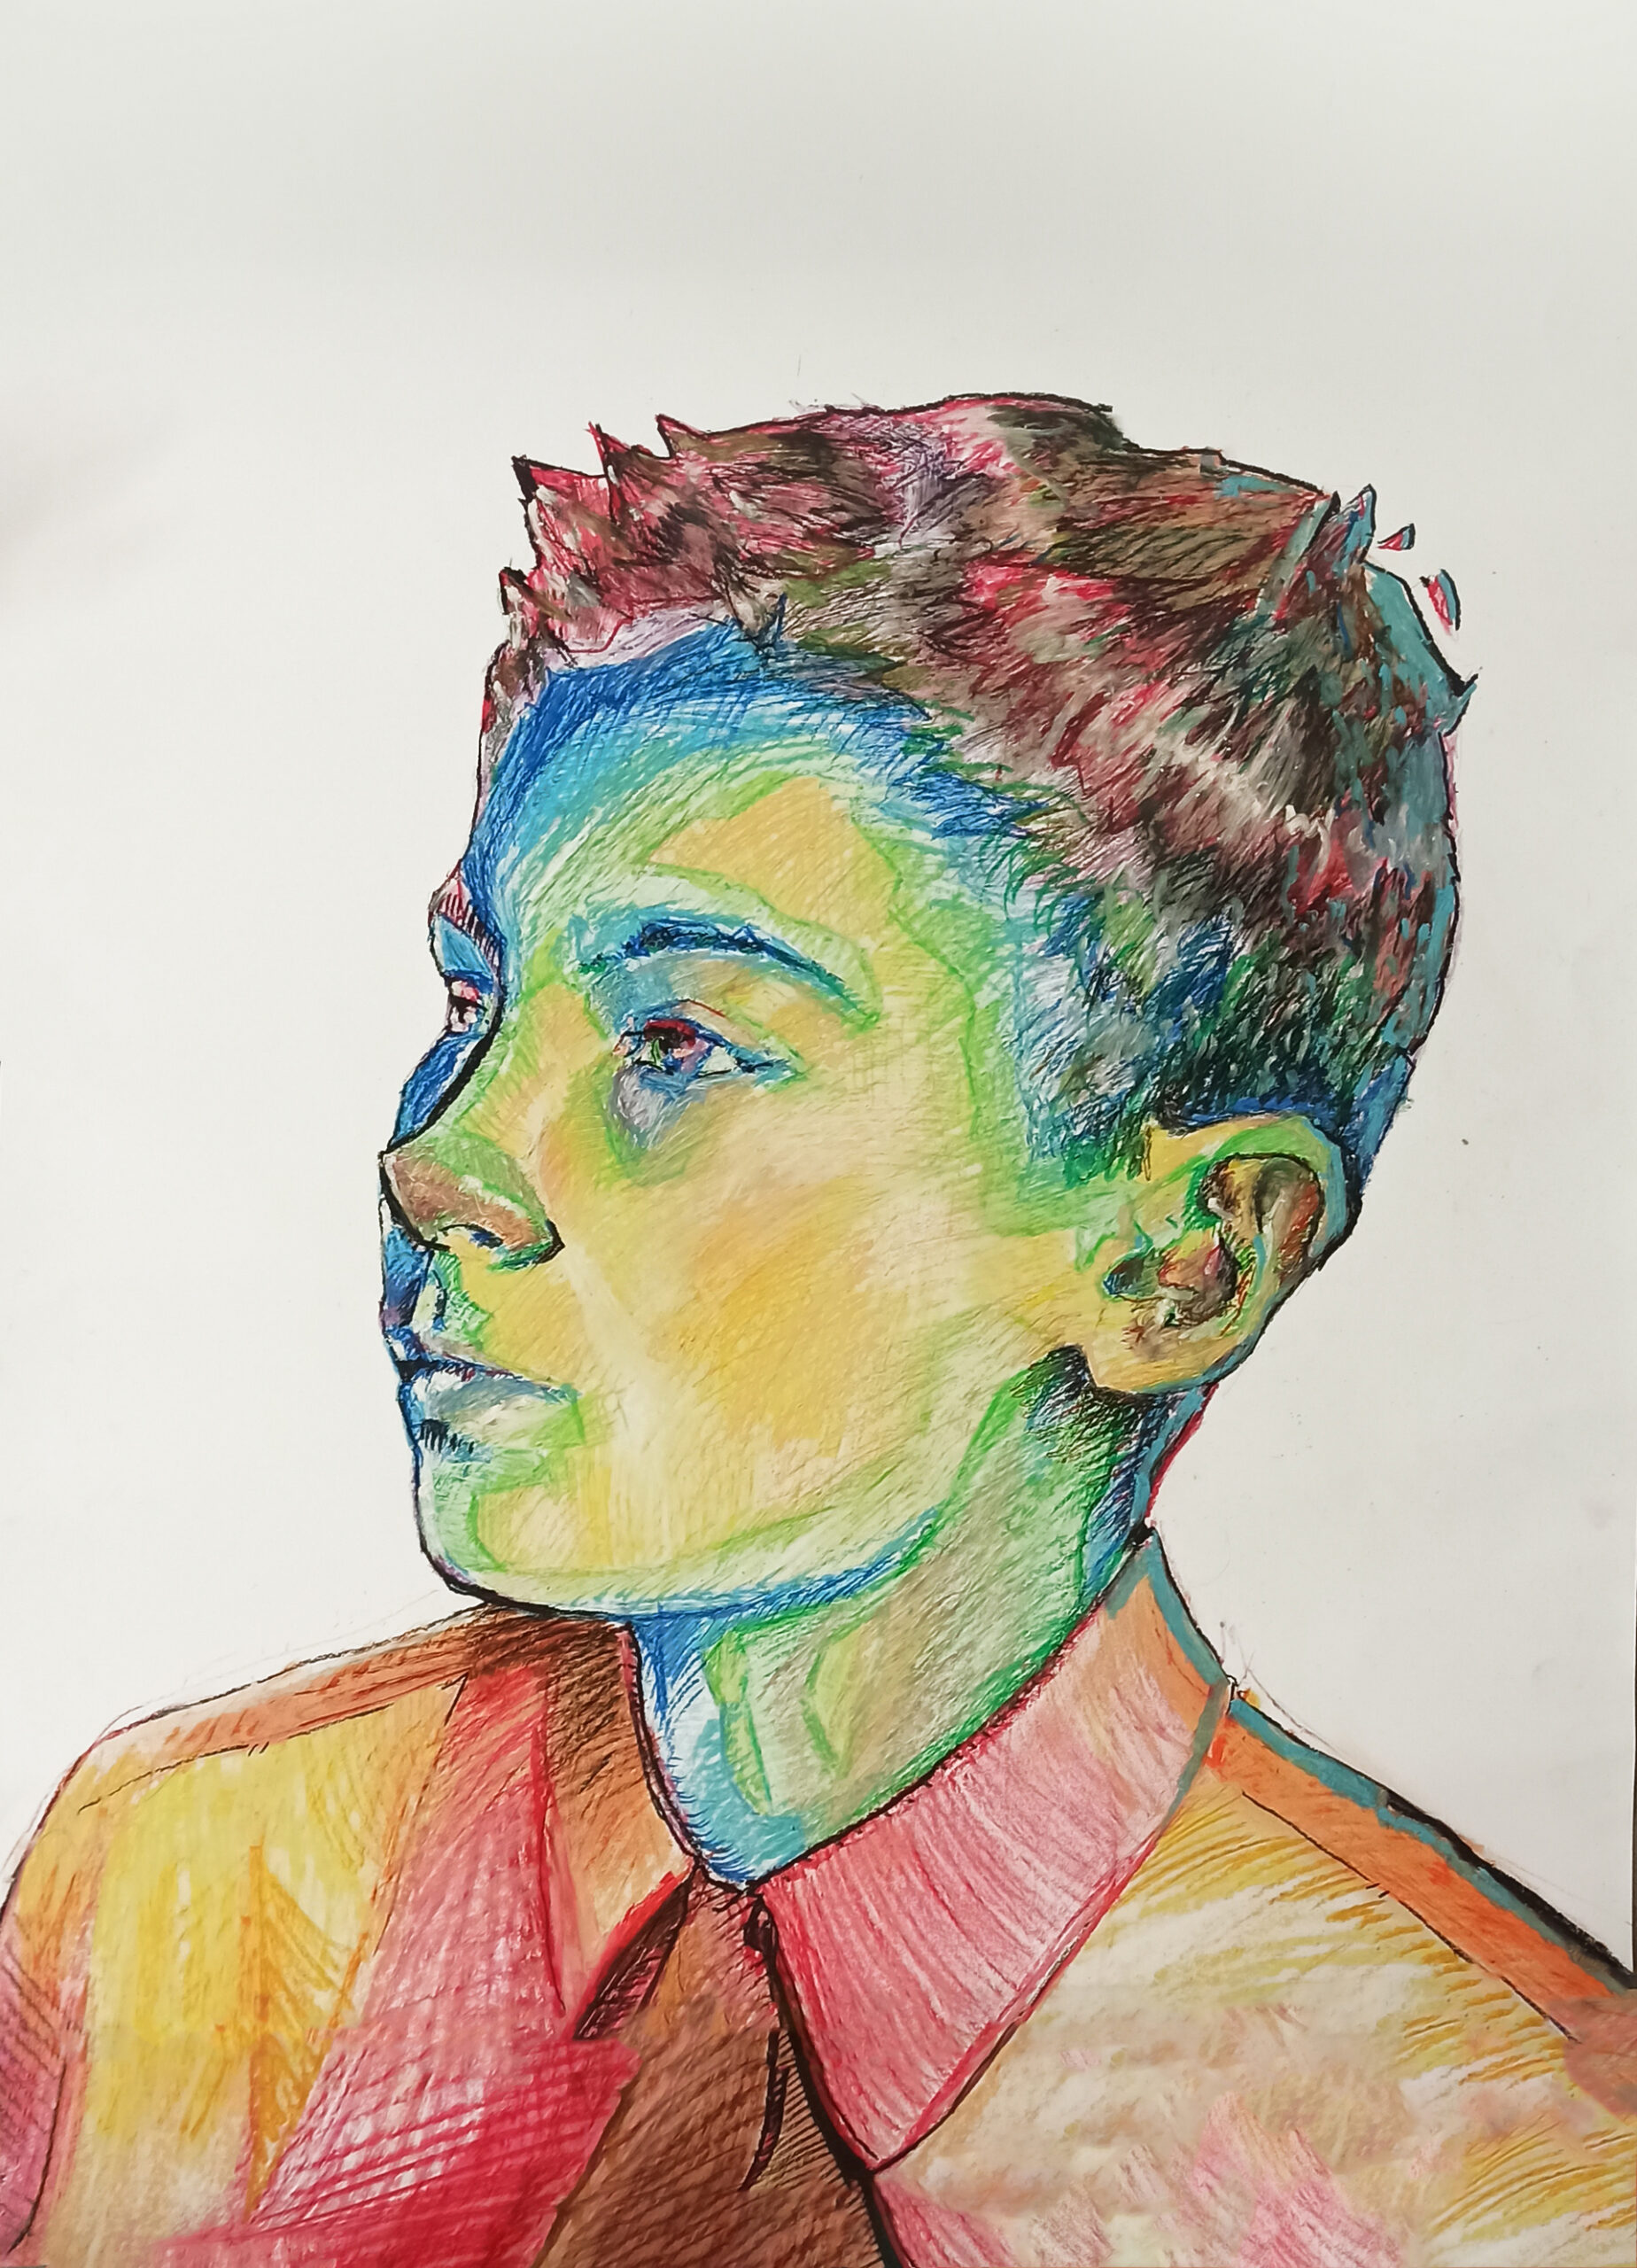 Portret ujętego profilem lewym do widza chłopca o żółto-zielono-niebieskiej twarzy (gdzie tony ciepłe to światło od strony widza). Sieć wielobarwnych kresek sugestywnie buduje tkankę jego włosów i czerwono-pomarańczową koszulę.